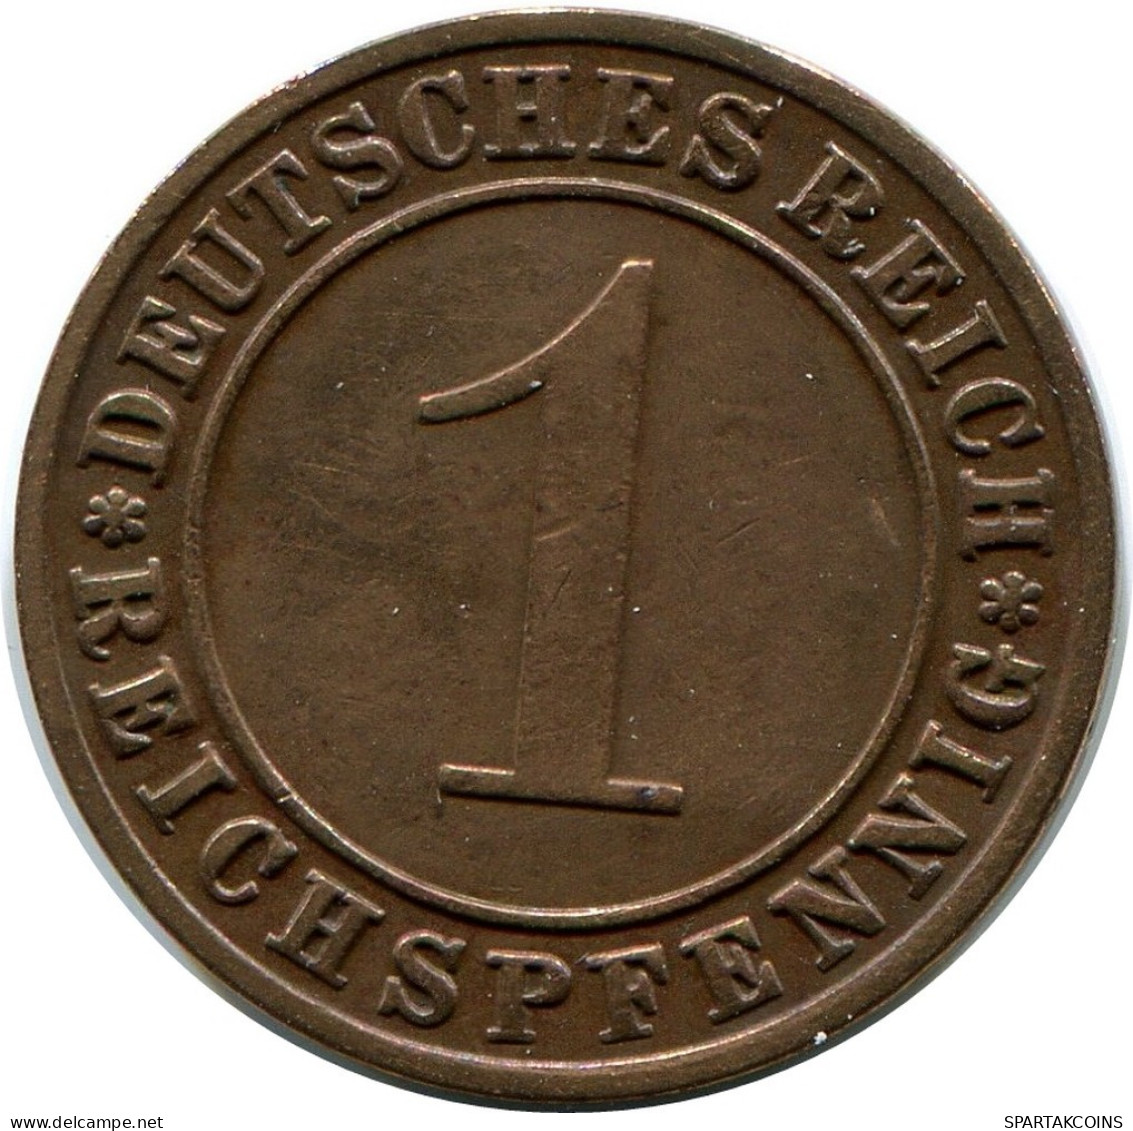 1 REICHSPFENNIG 1928 G DEUTSCHLAND Münze GERMANY #DB782.D.A - 1 Renten- & 1 Reichspfennig